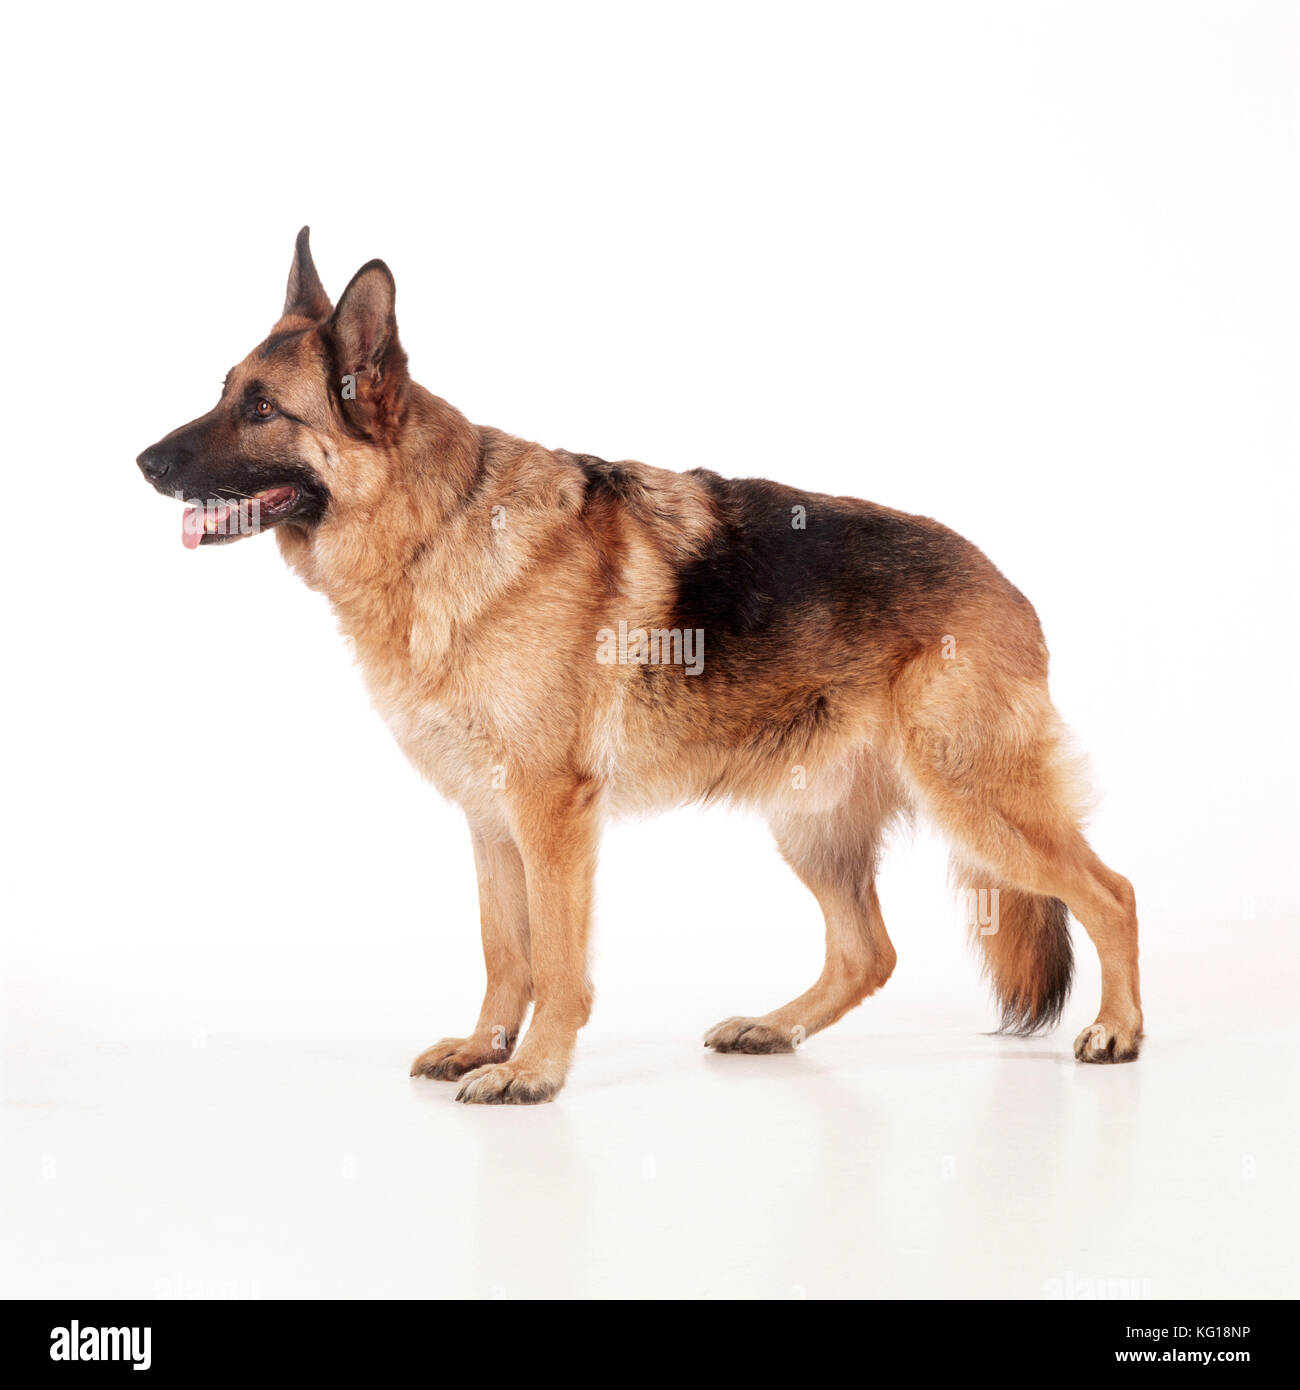 German Shepherd / Alsatian Dog - side view Stock Photo